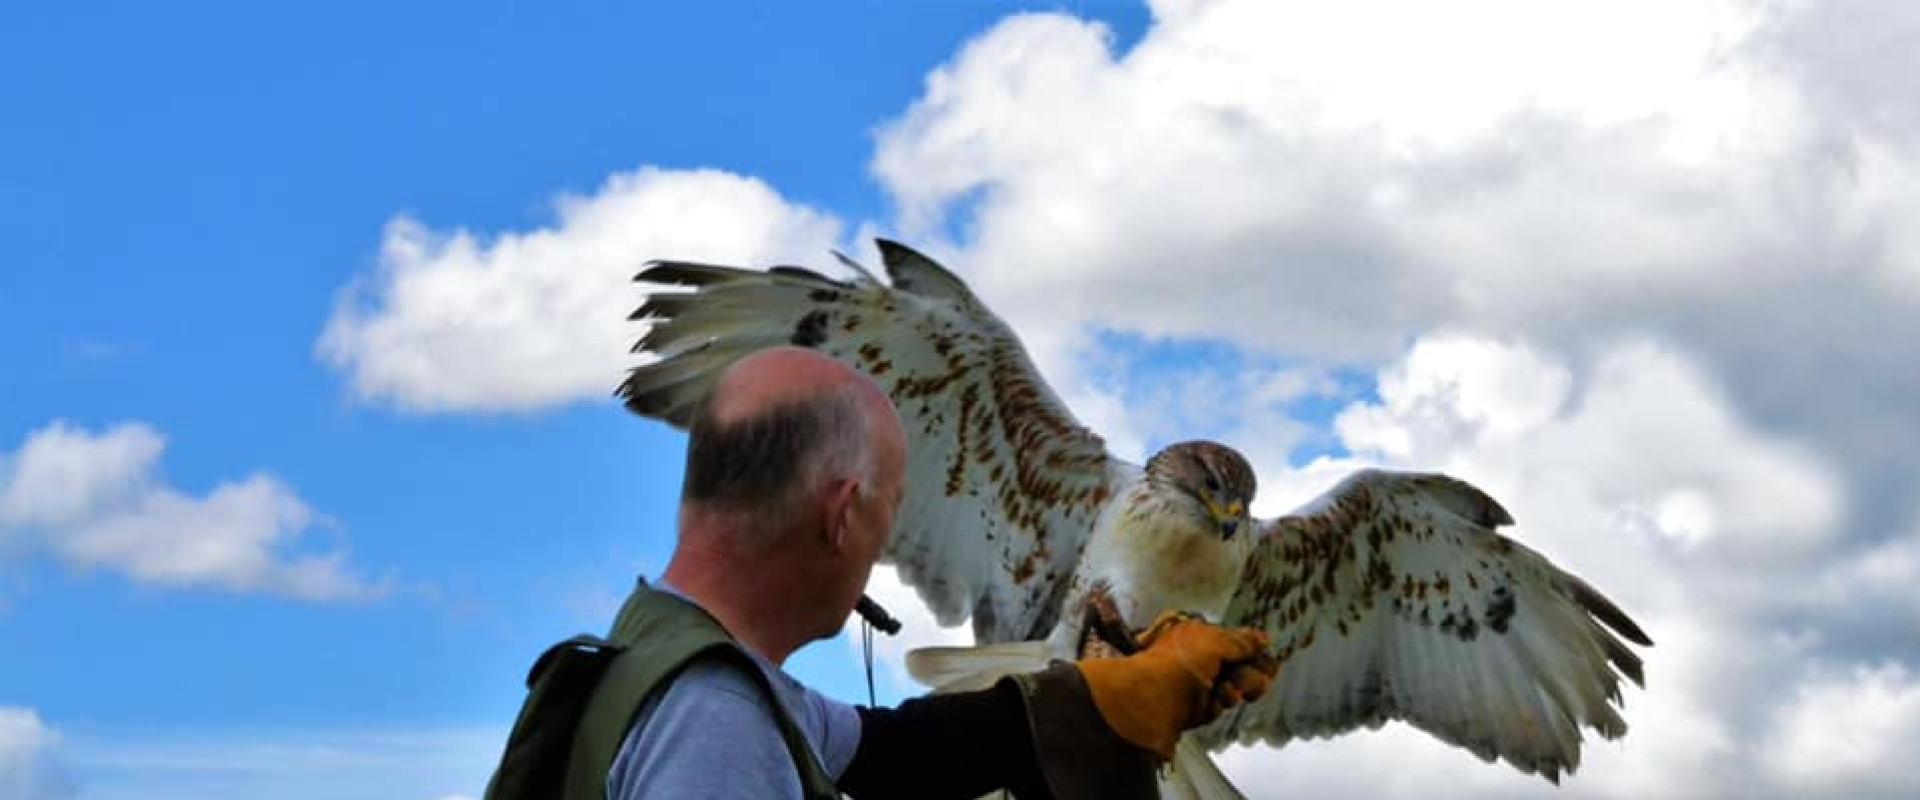 hebog ag aderyn / falconer with bird